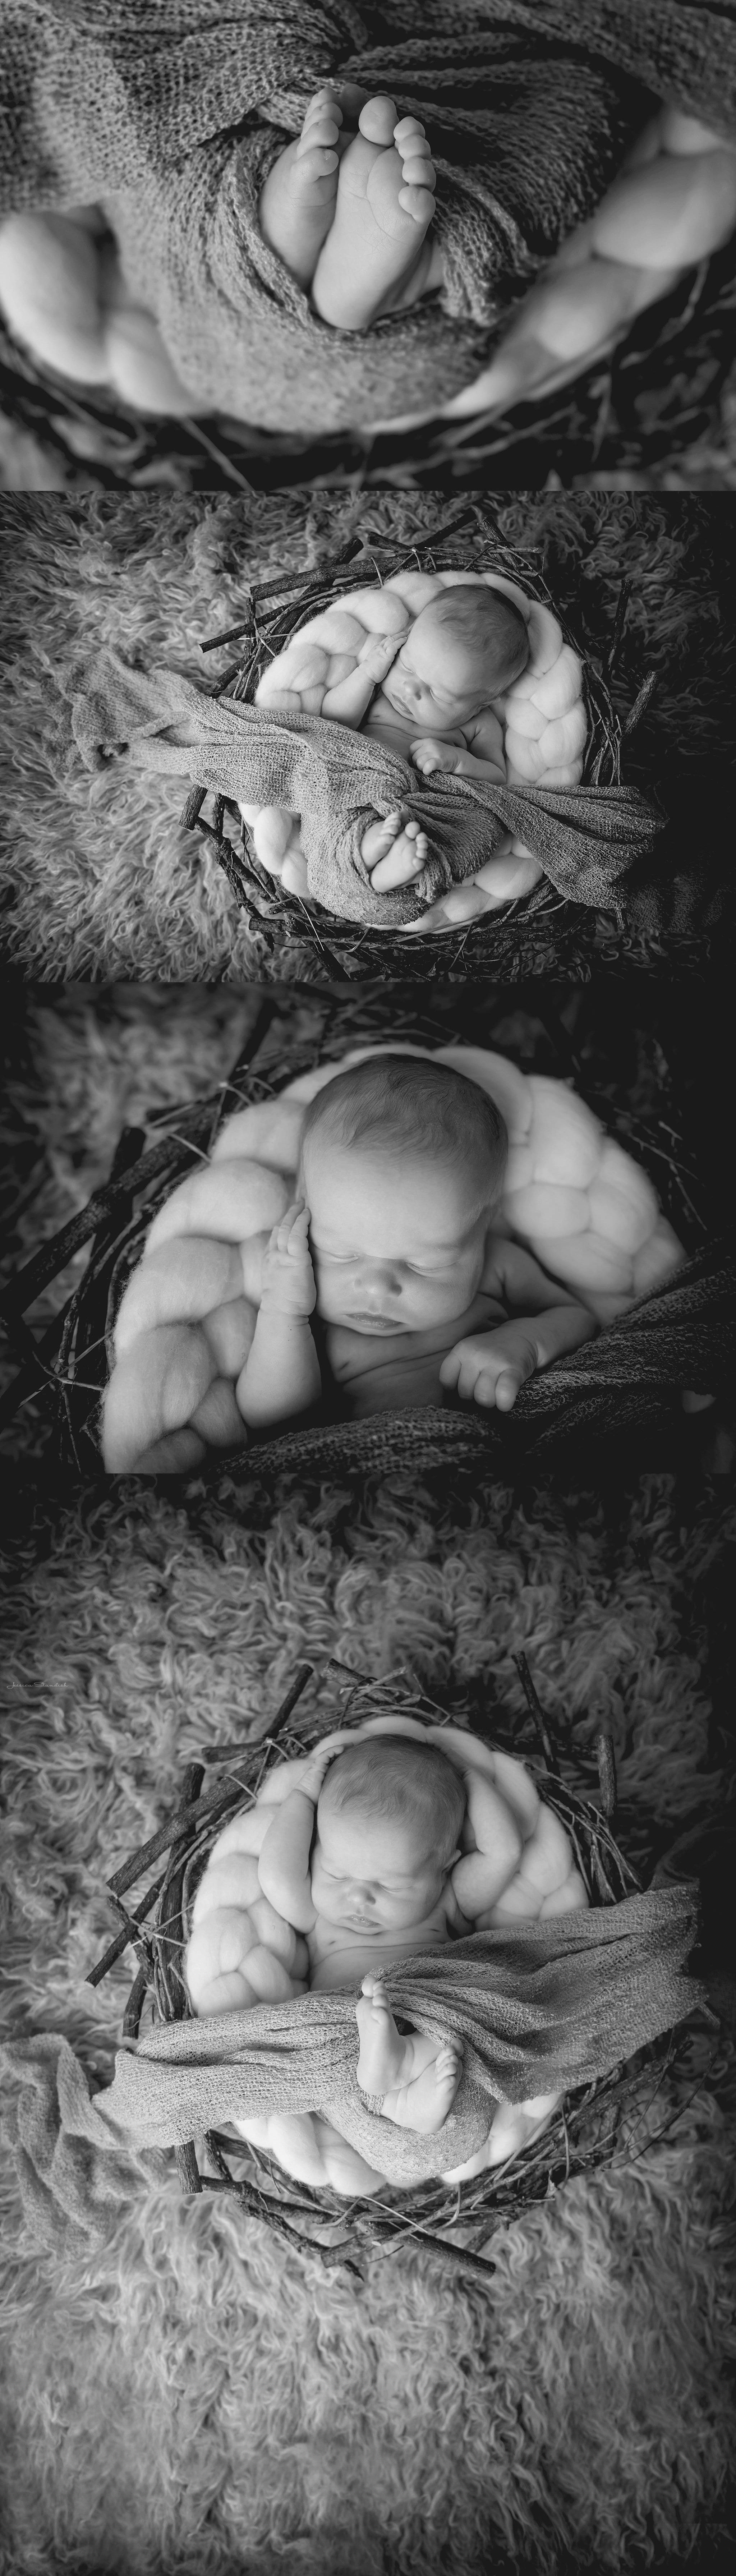 baby toes, newborn baby girl, newborn photography